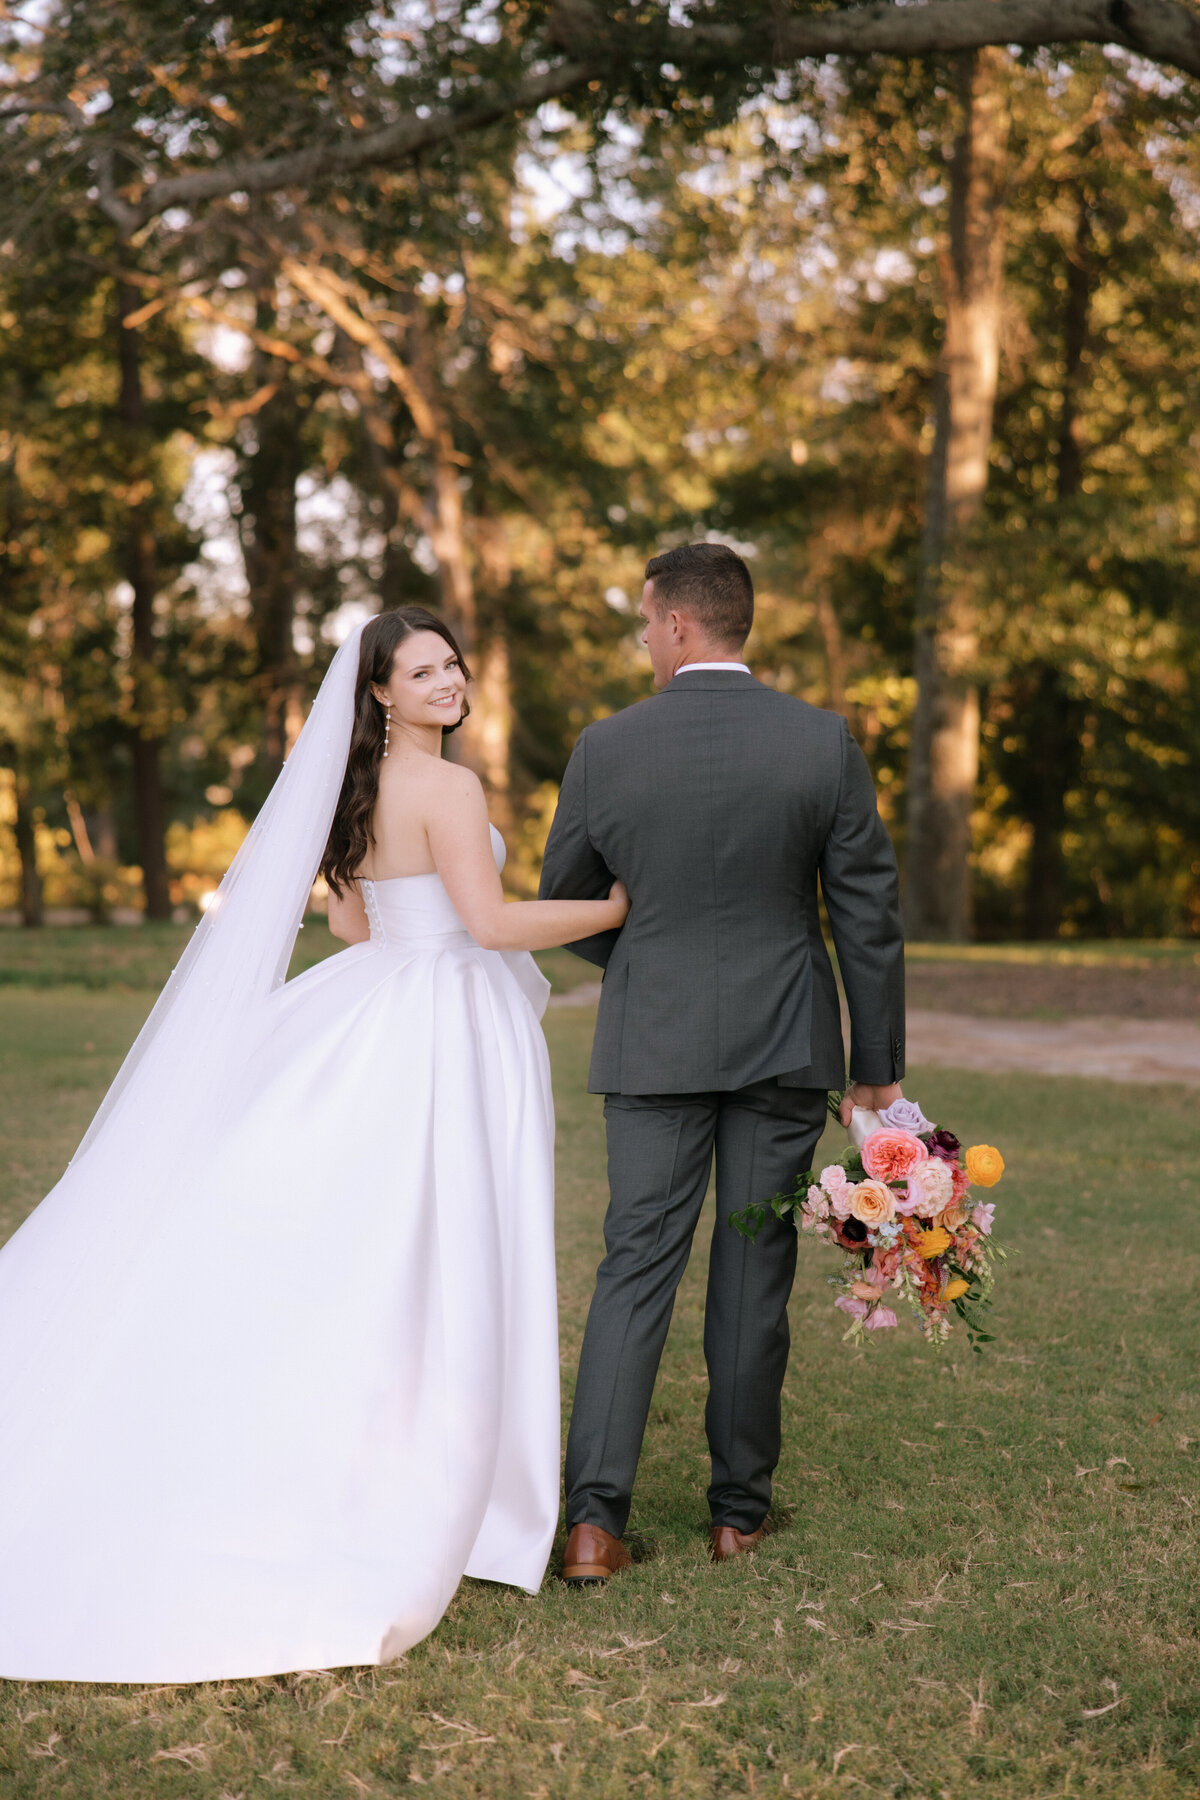 Madison + Dean | Wedding | Alison Faith Photography-8670